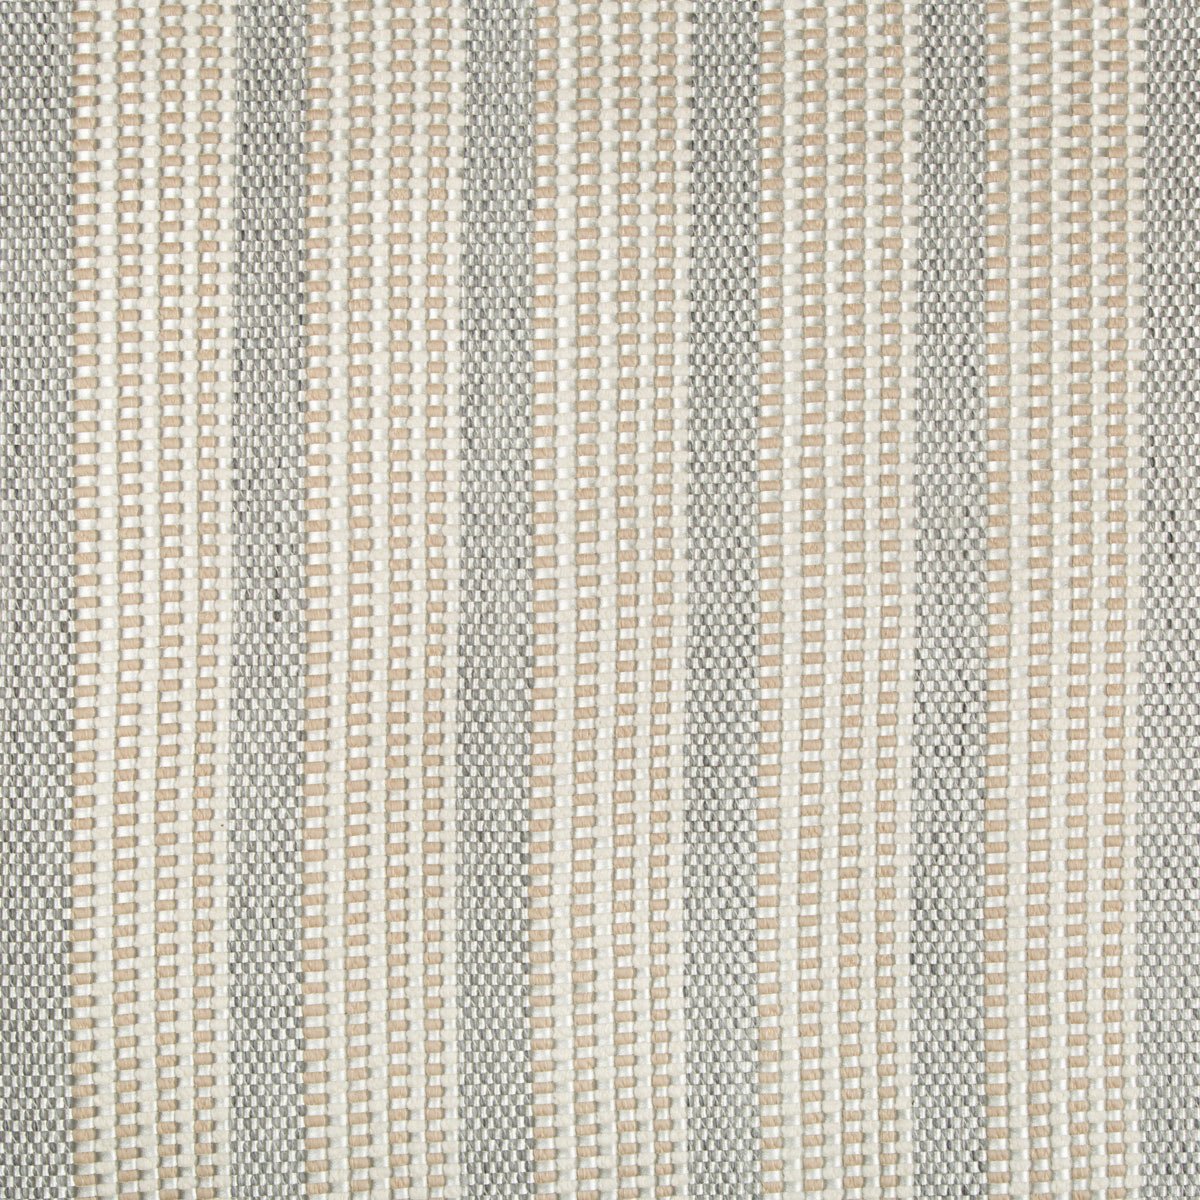 Kravet textured southwest design upholstery fabric in chain stripe ft164 